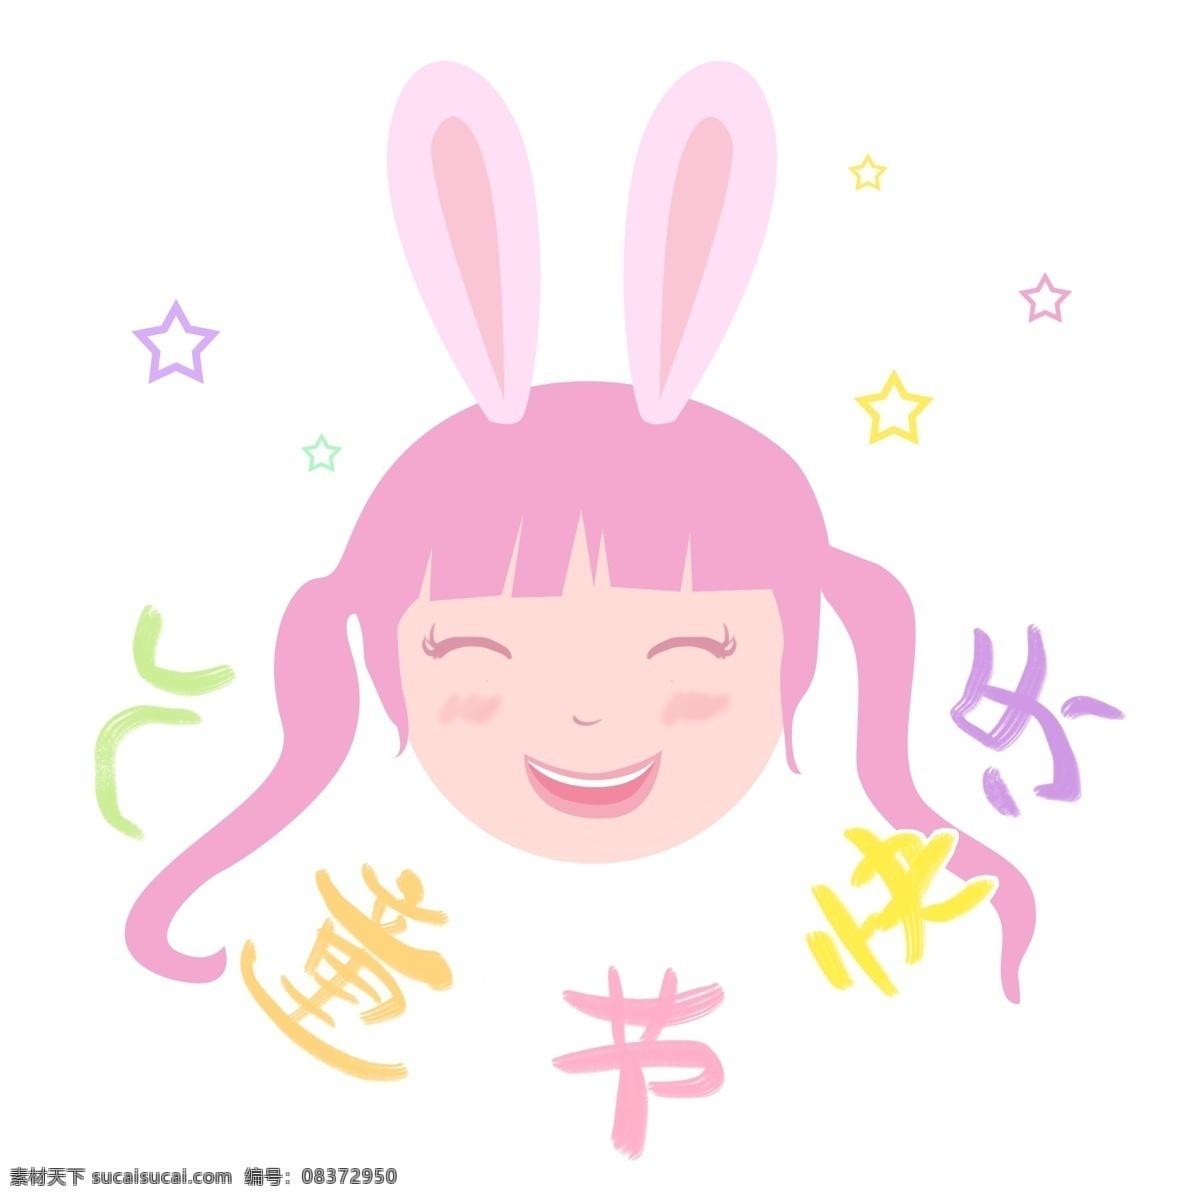 儿童节女孩 卡通女孩 儿童节 六一 开心 笑脸 兔耳朵 粉色 可爱